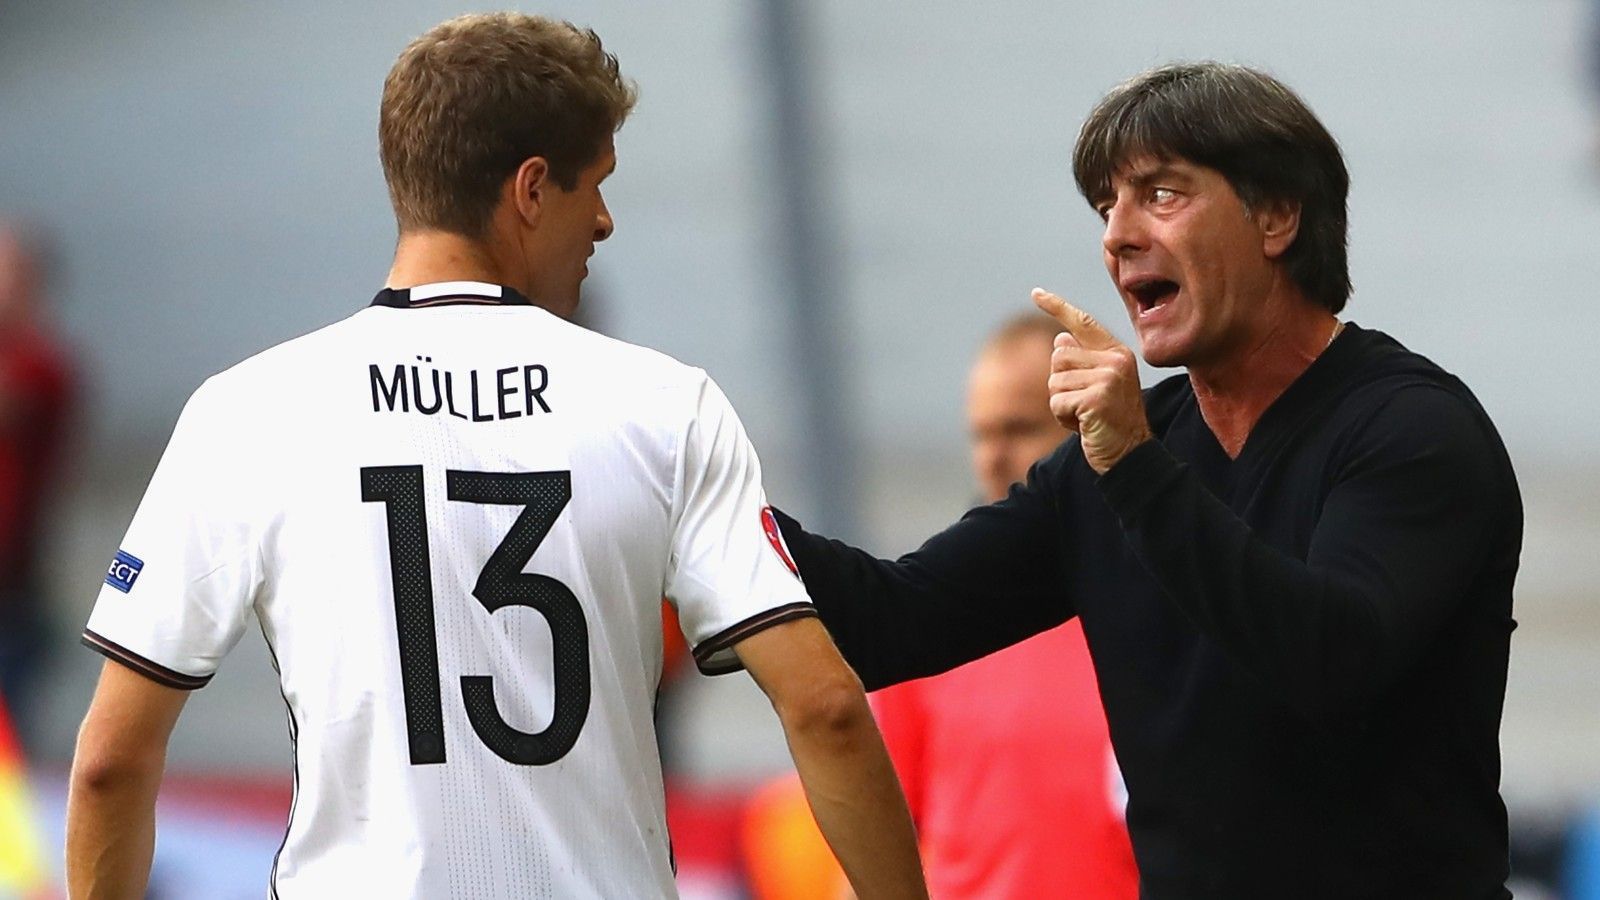 
                <strong>Mittelfeld: Thomas Müller (FC Bayern)</strong><br>
                 - 100 Einsätze - Debüt im März 2010 - wurde von Löw nach der blamablen WM 2018 im März 2019 aufgrund des geplanten Umbruchs aus dem Kader gestrichen
              